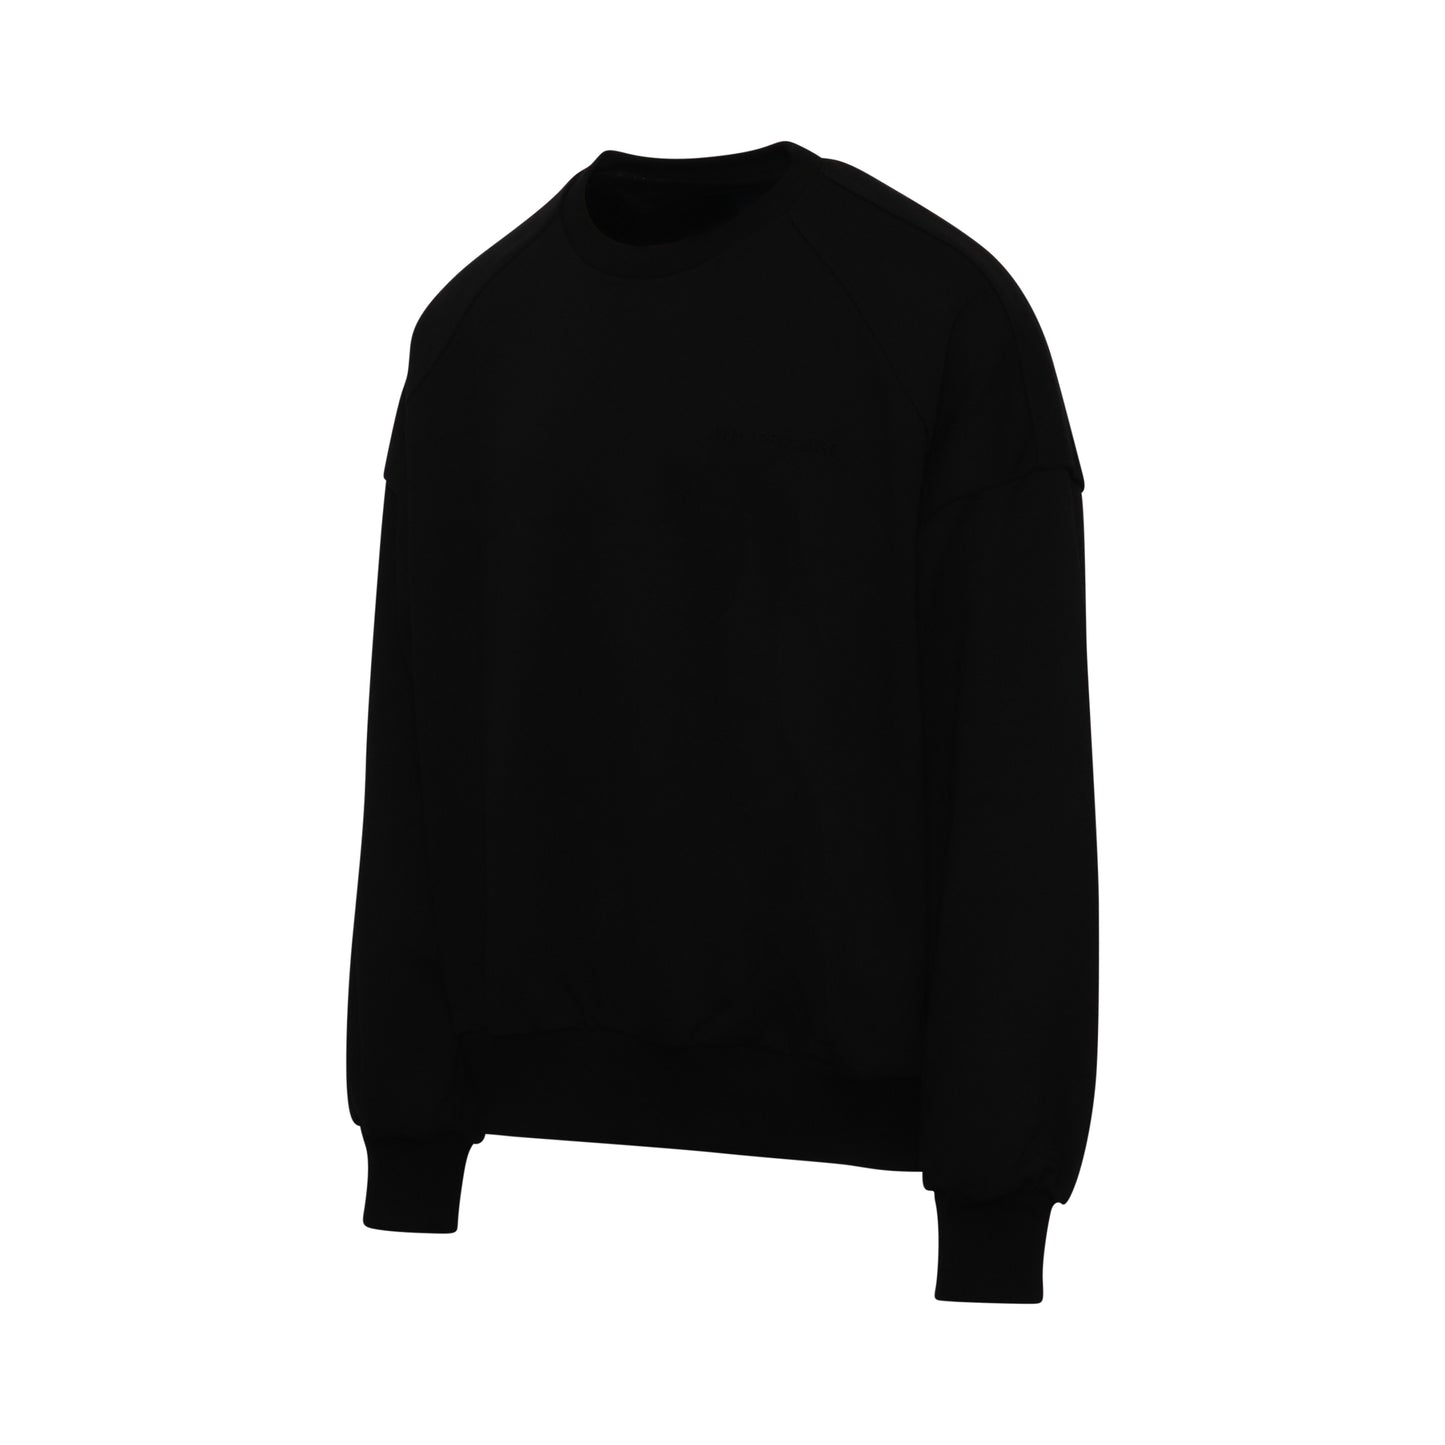 Juunj Oversize Graphic Sweatshirt in Black